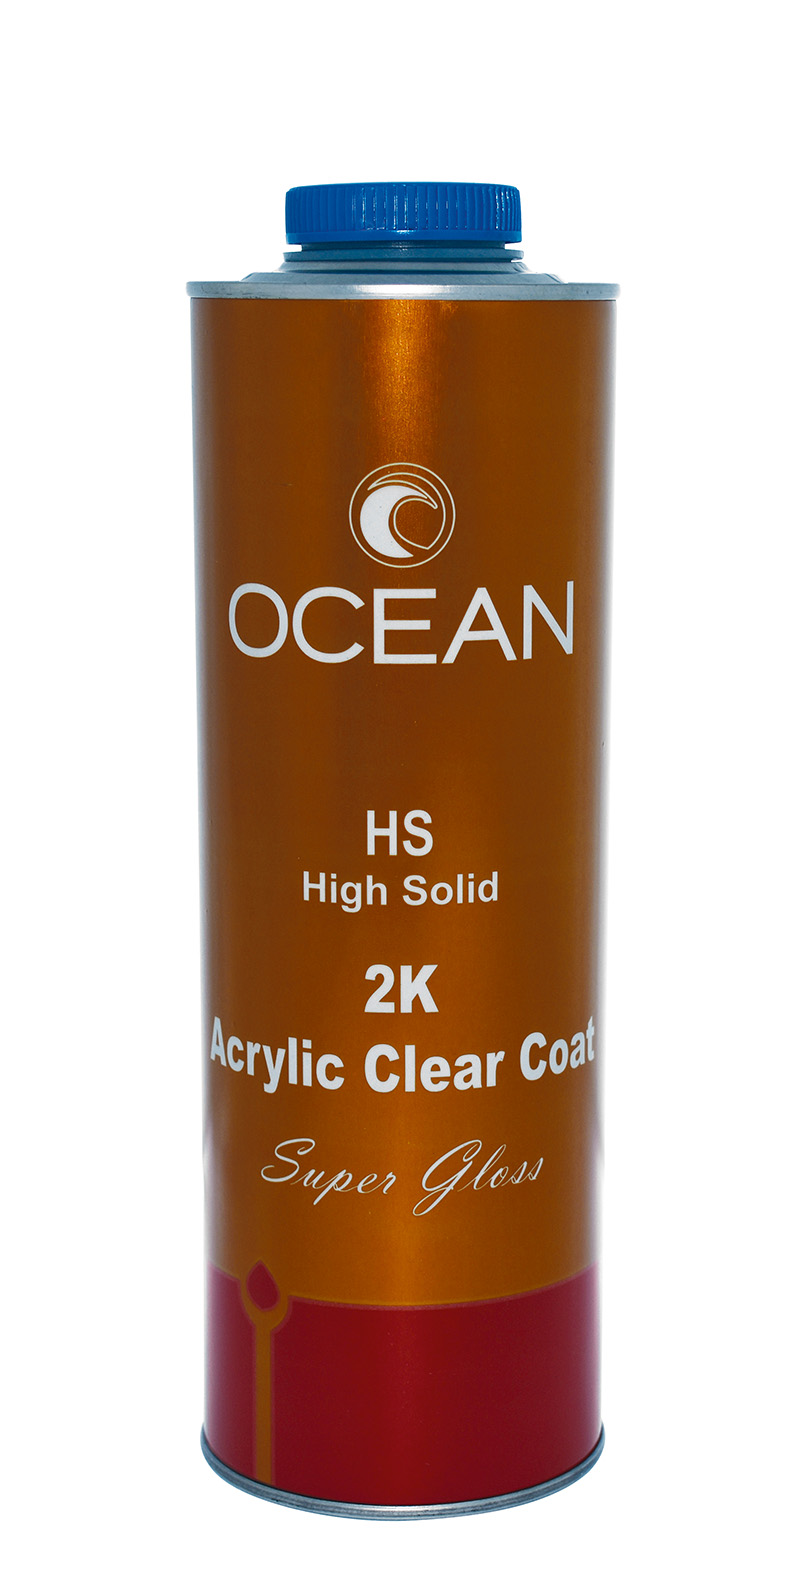 OCEAN HS 2K ACRYLIC CLEAR COAT